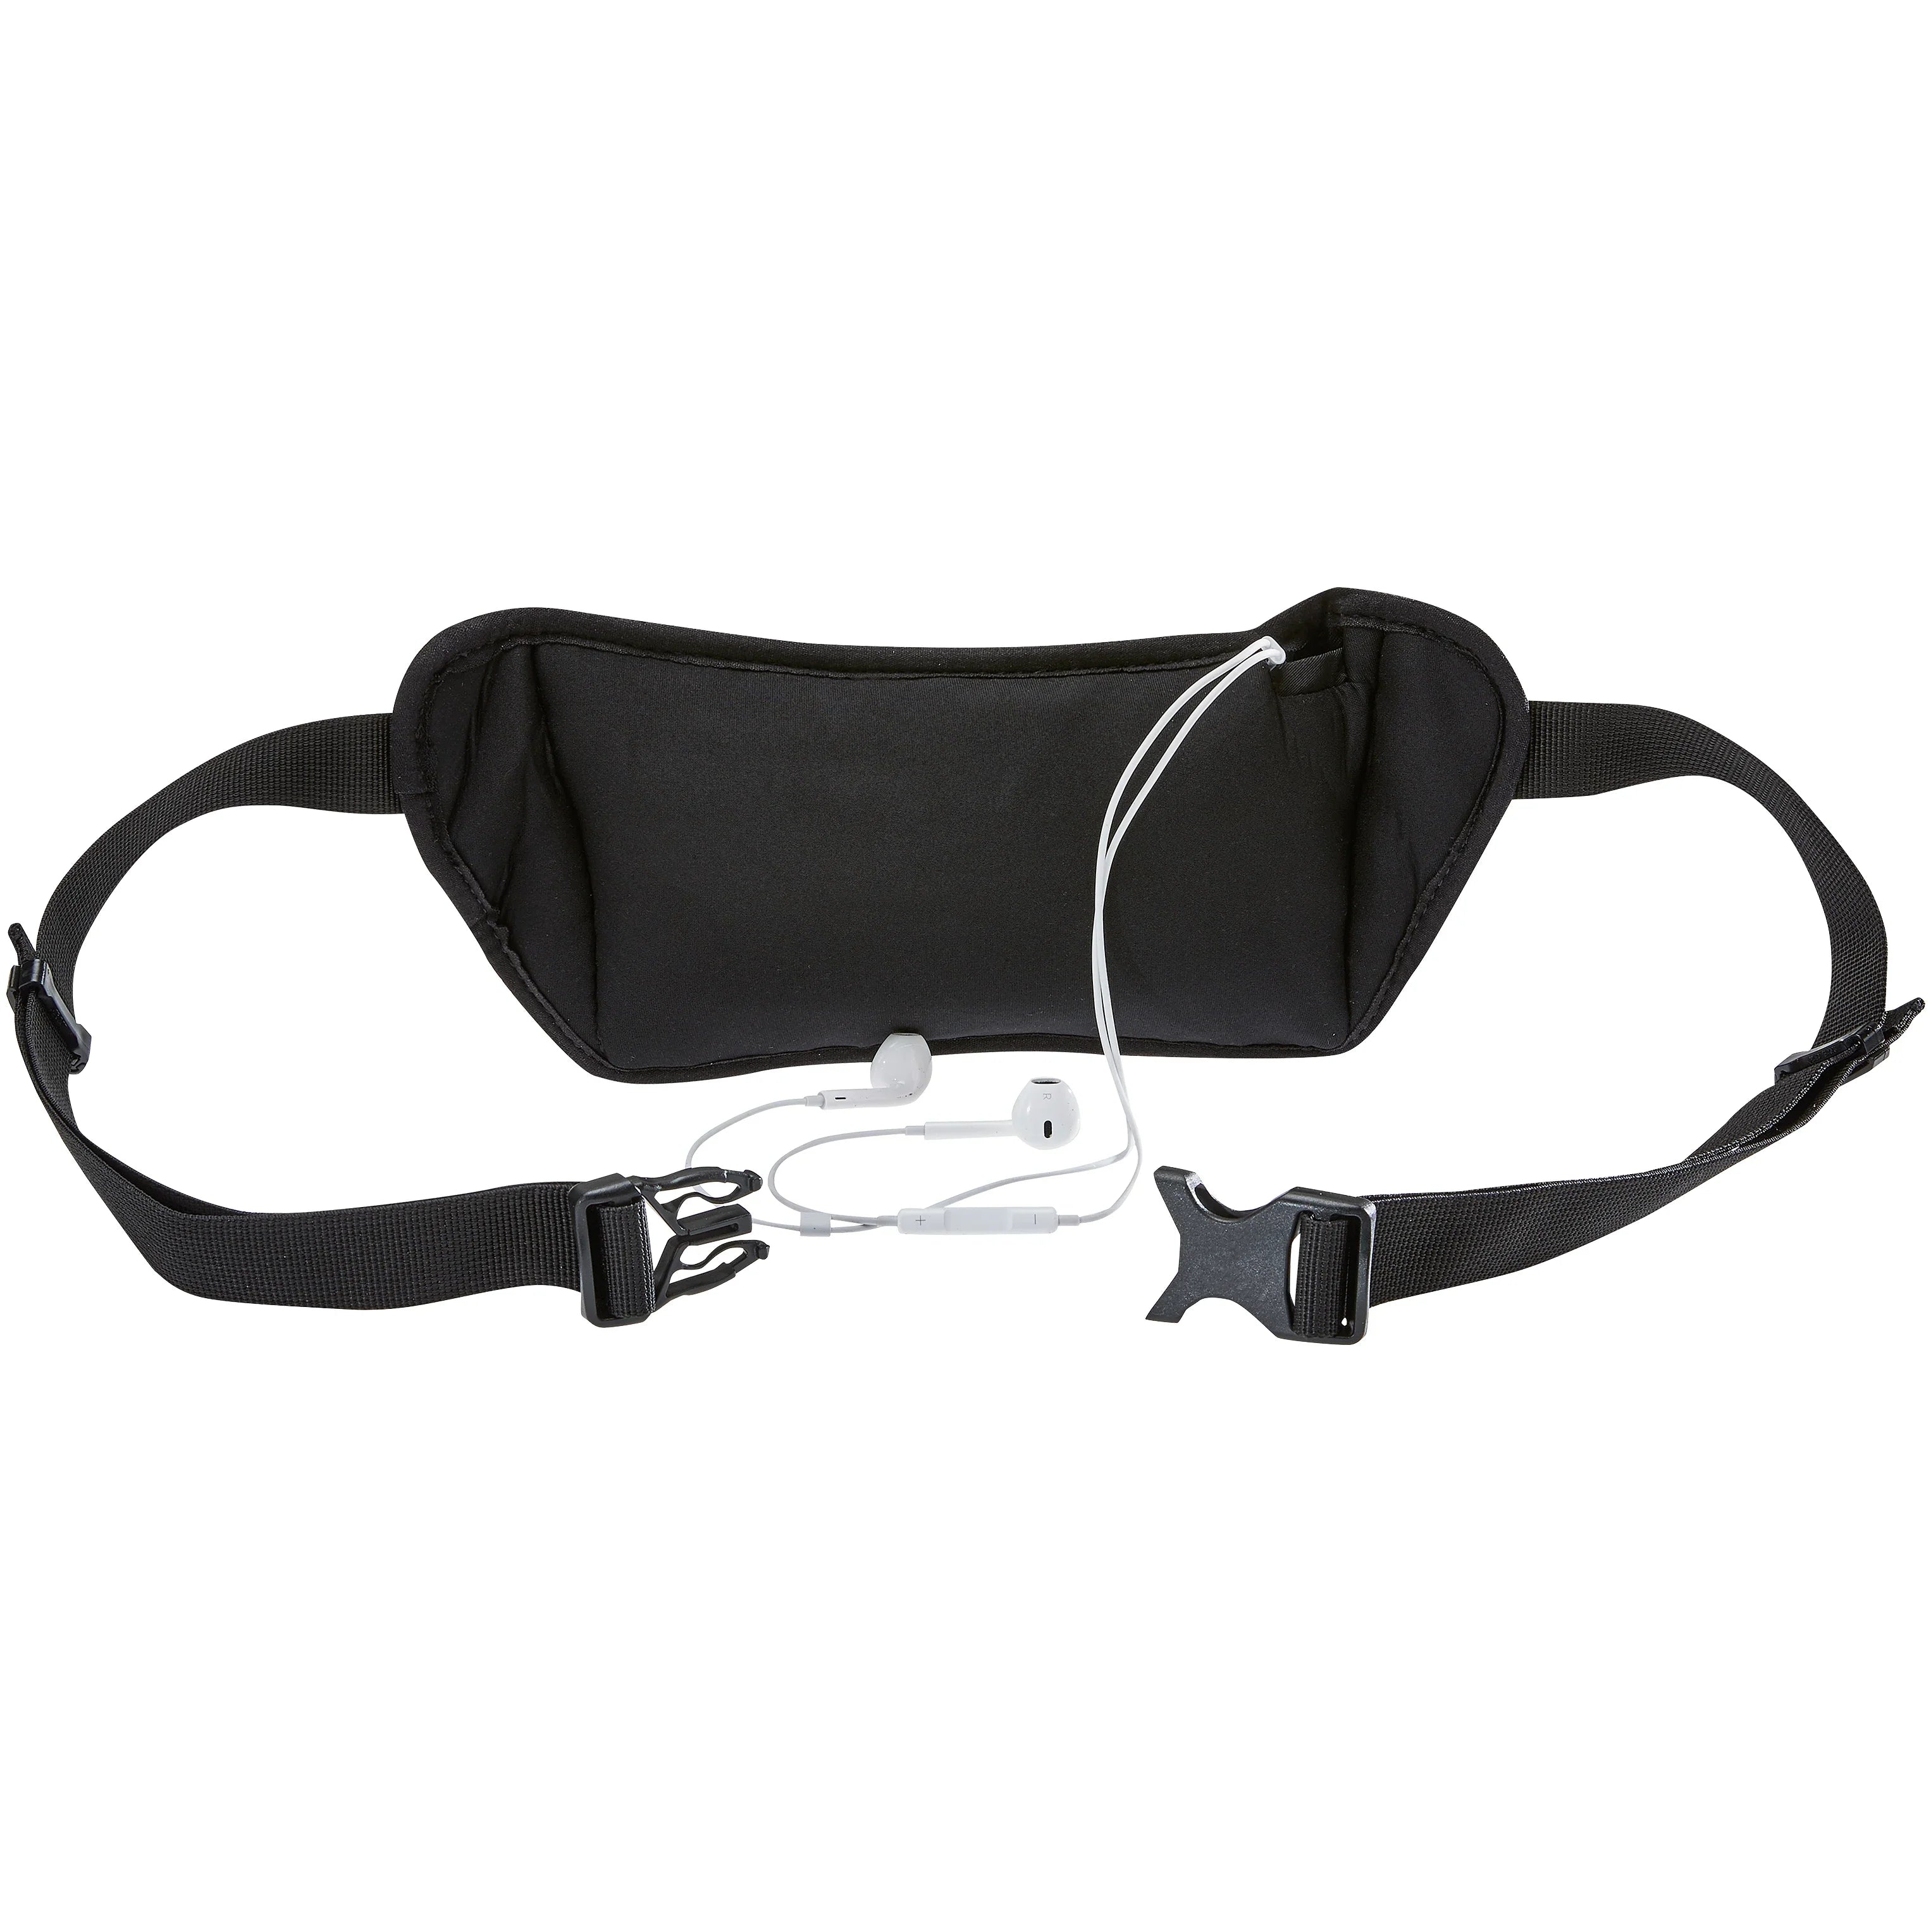 Deuter Accessories Neo Belt II belt bag 30 cm - Black